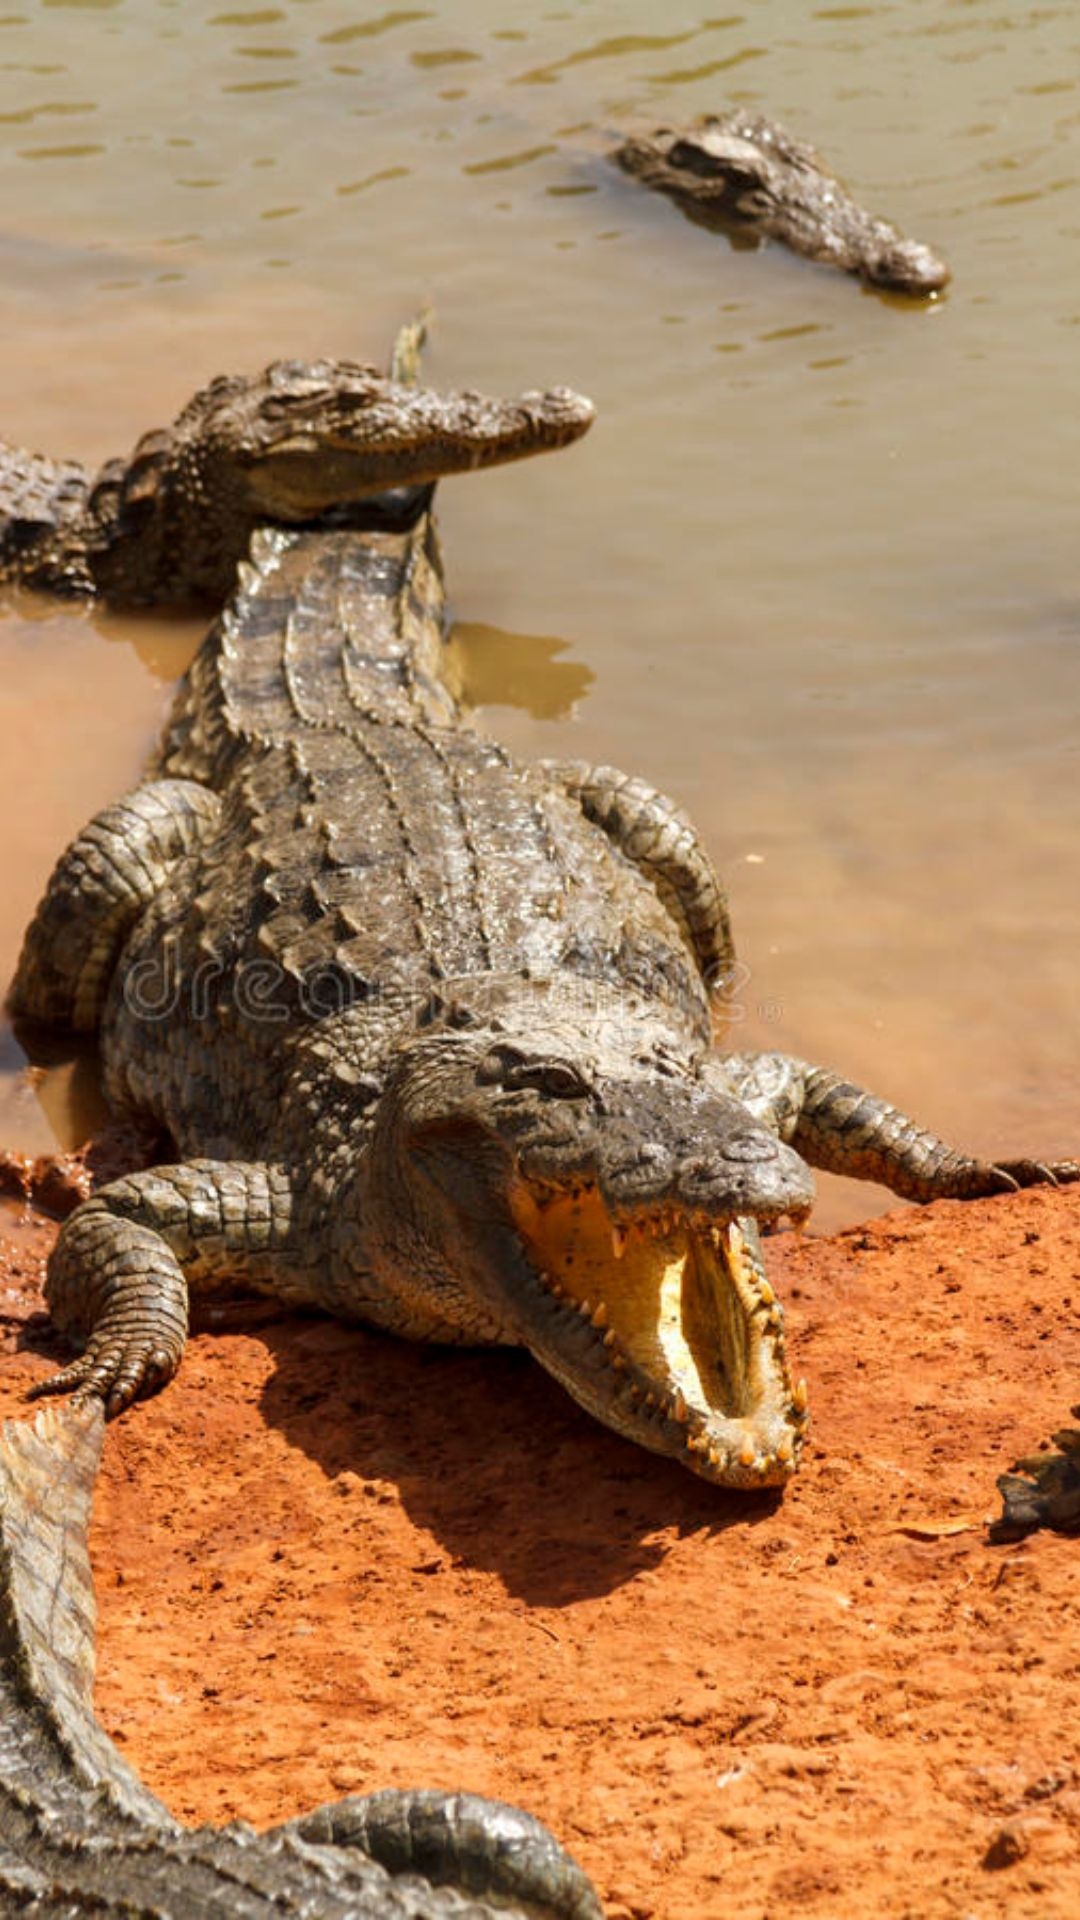 Crocodile: Crocodylus porosus has a wide snout compared to most crocodiles. 1080x1920 Full HD Wallpaper.